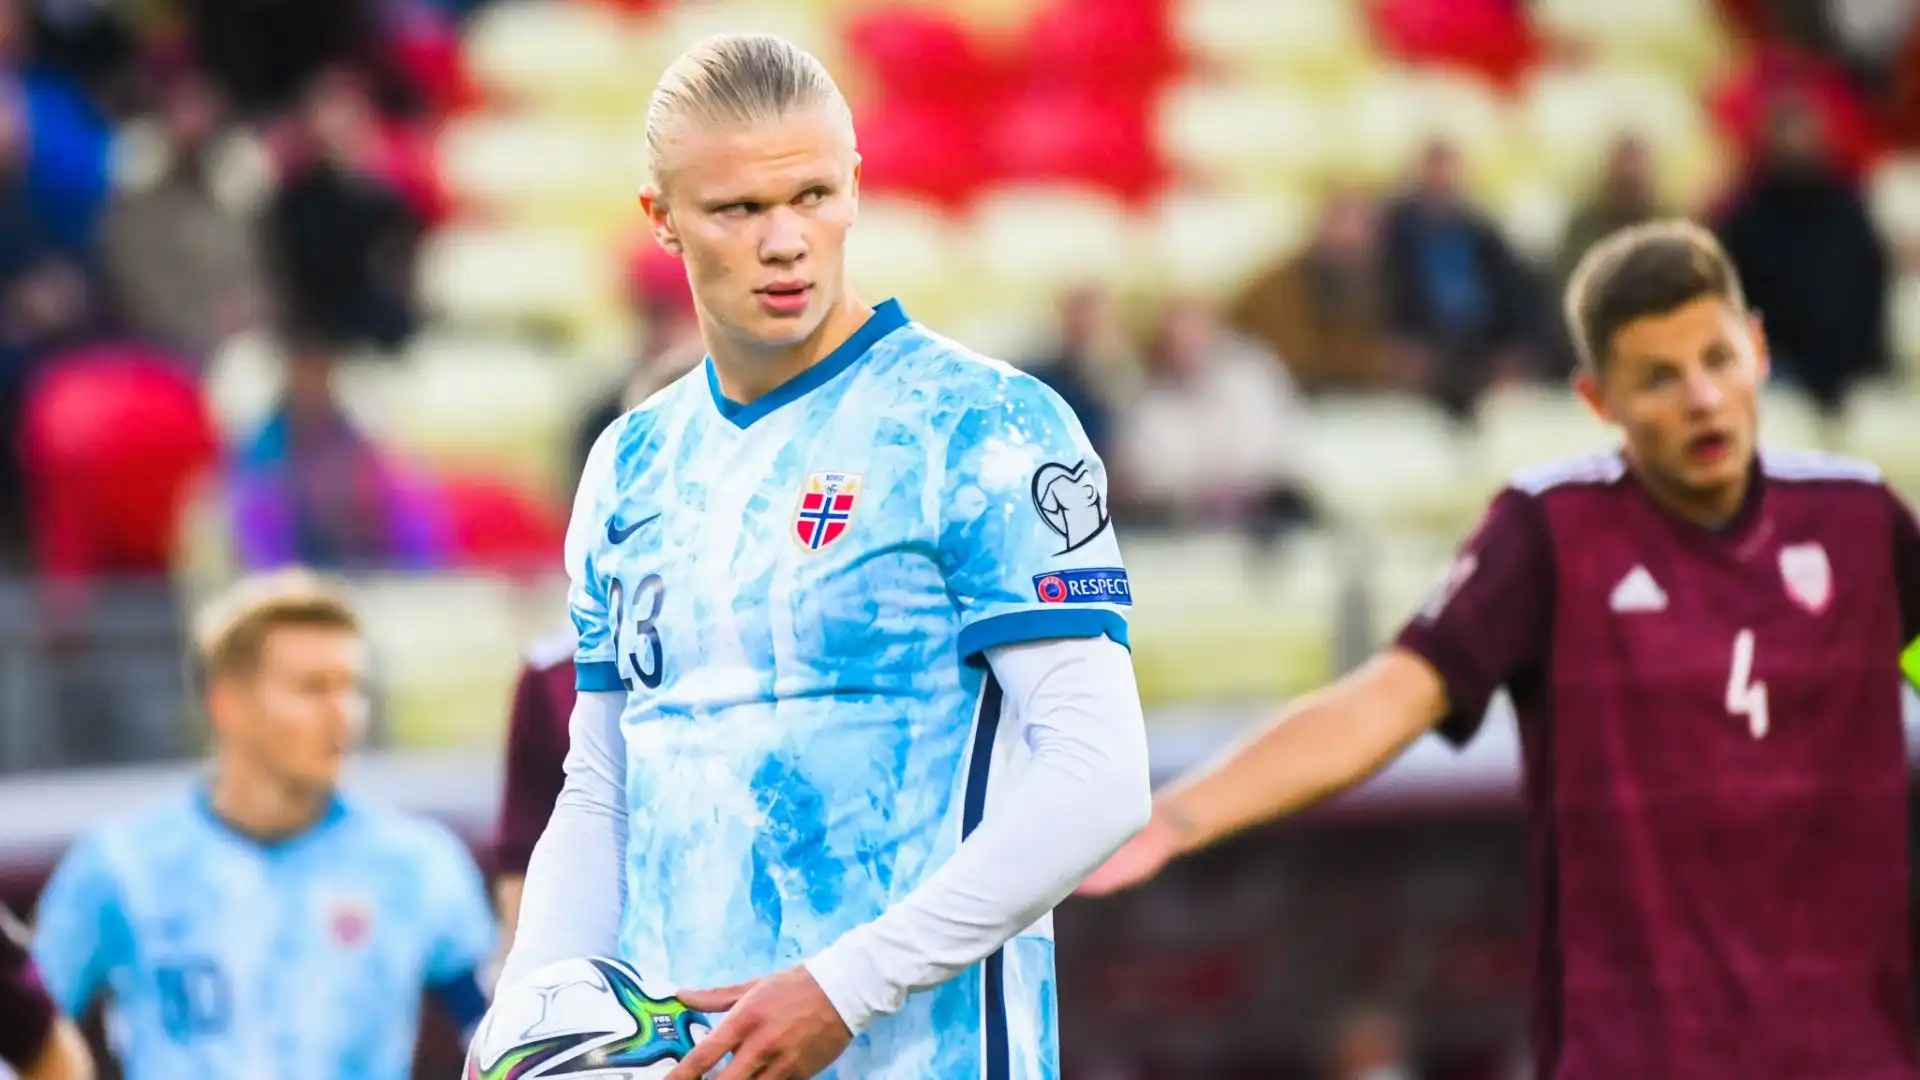 Nonostante la giovane età, Haaland è già all'ottavo posto nella classifica dei calciatori norvegesi che hanno segnato più gol in nazionale